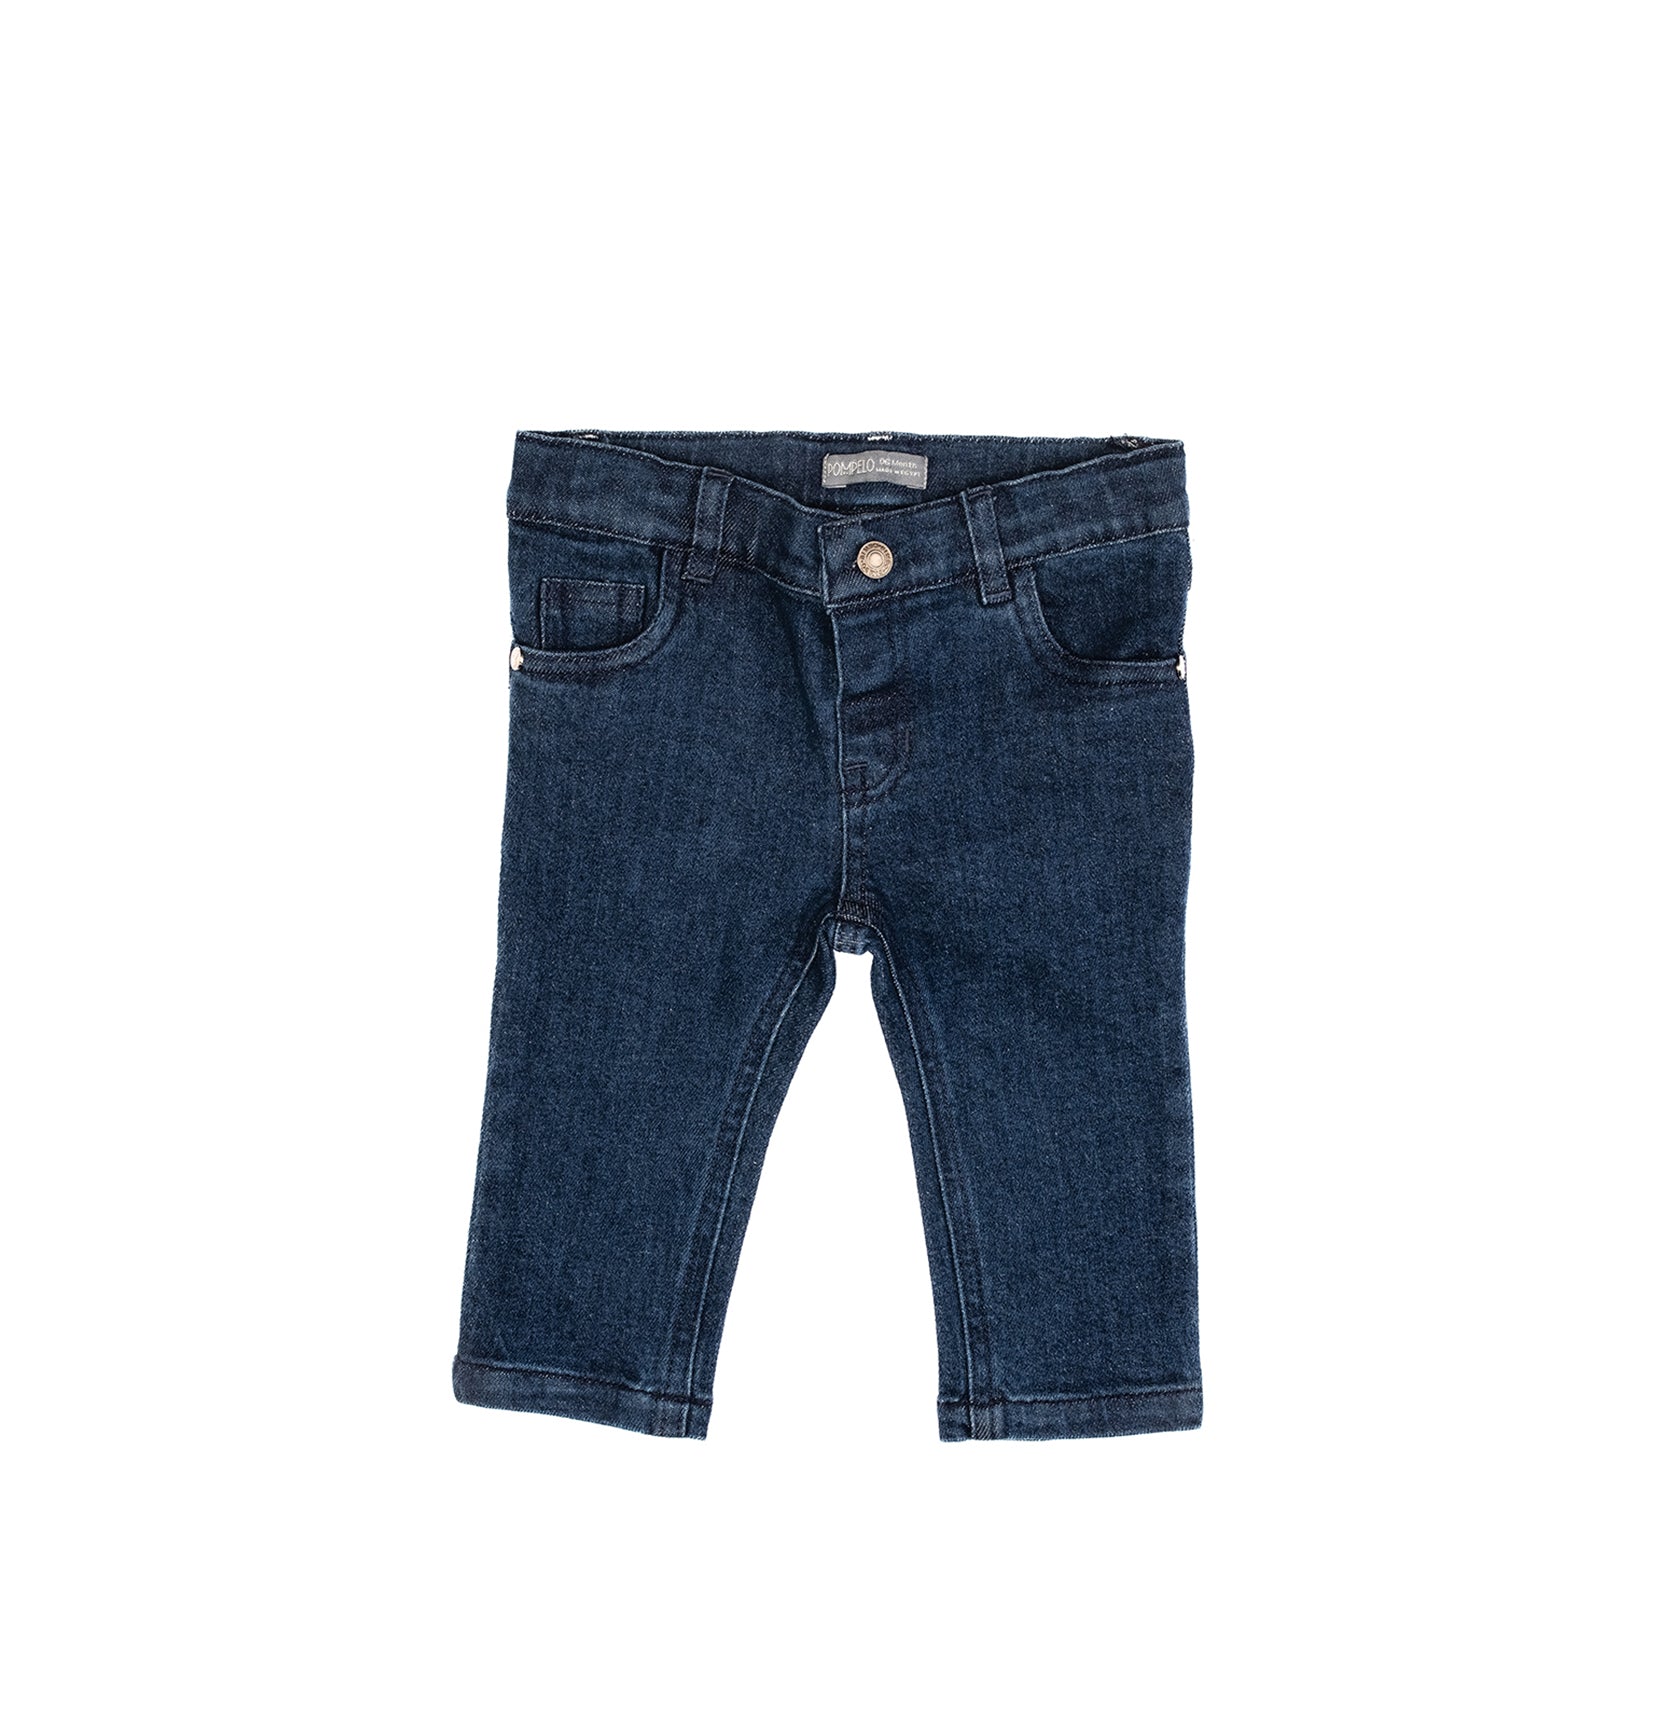 Unique Babyboy denim jeans by Pompelo